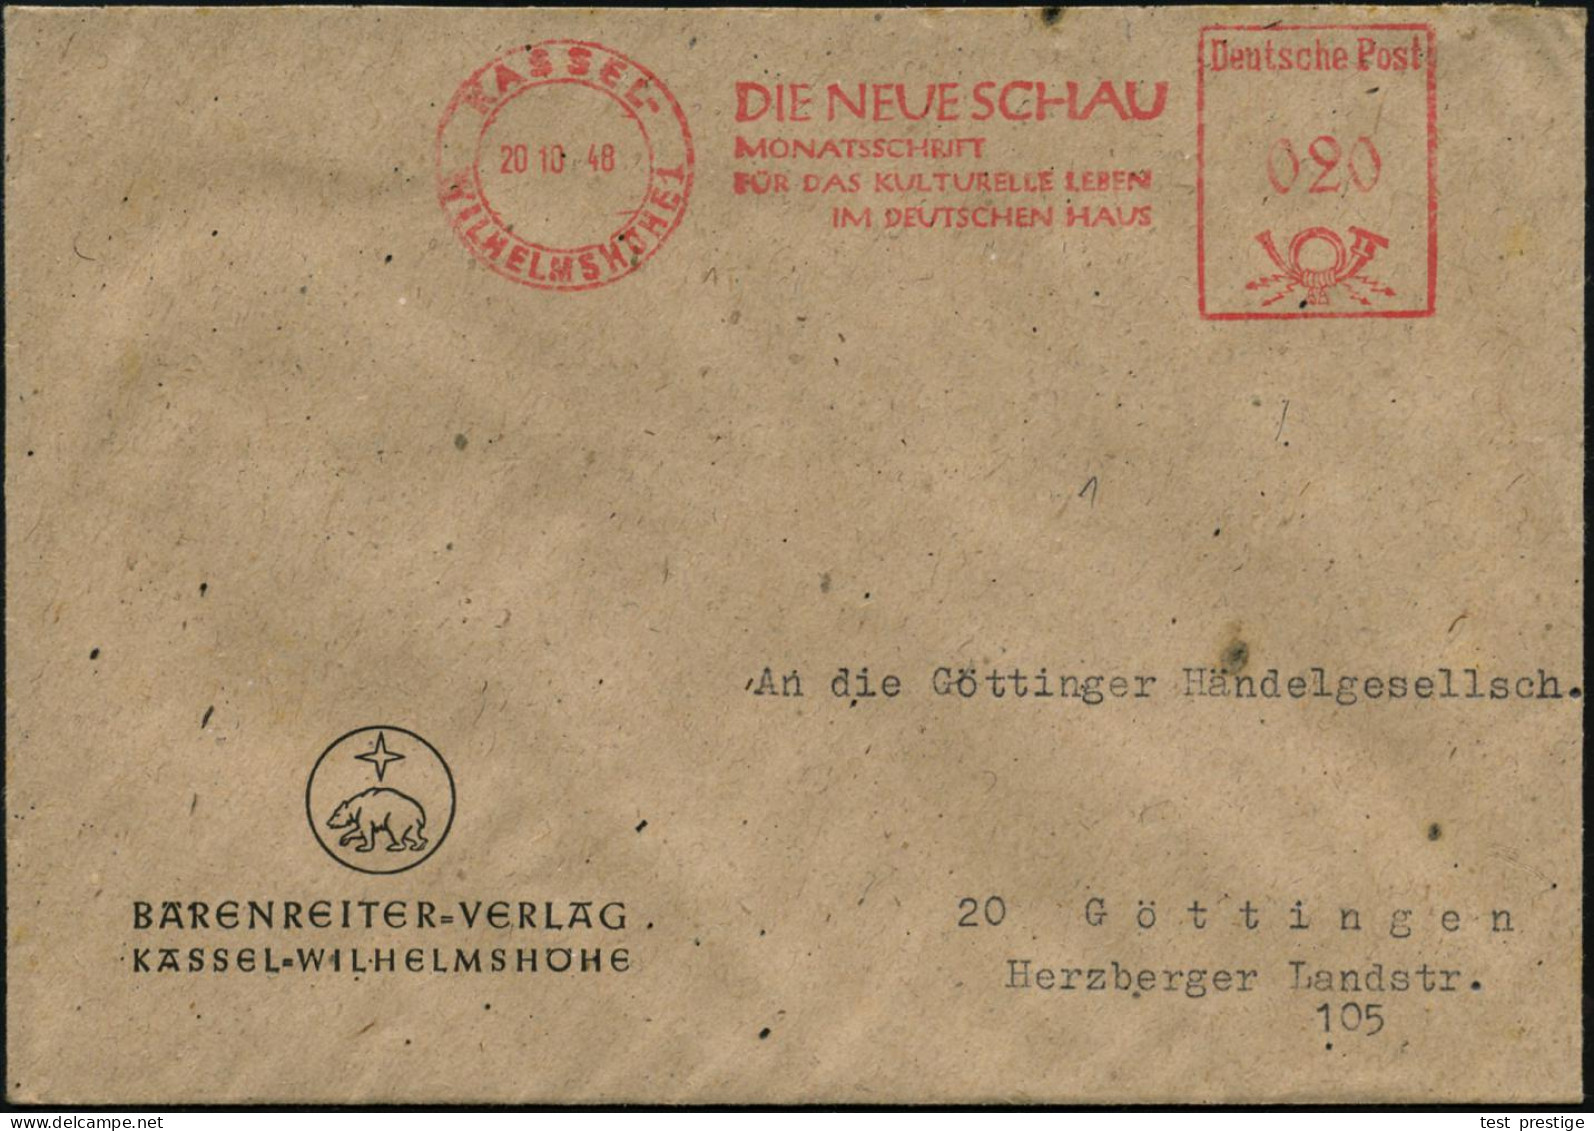 KASSEL-/ WILHELMSHÖHE 1/ DIE NEUE SCHAUMONATSZEITSCHRIFT... 1948 (20.10.) AFS Francotyp "Posthorn - Deutsche Post" Auf F - Muziek